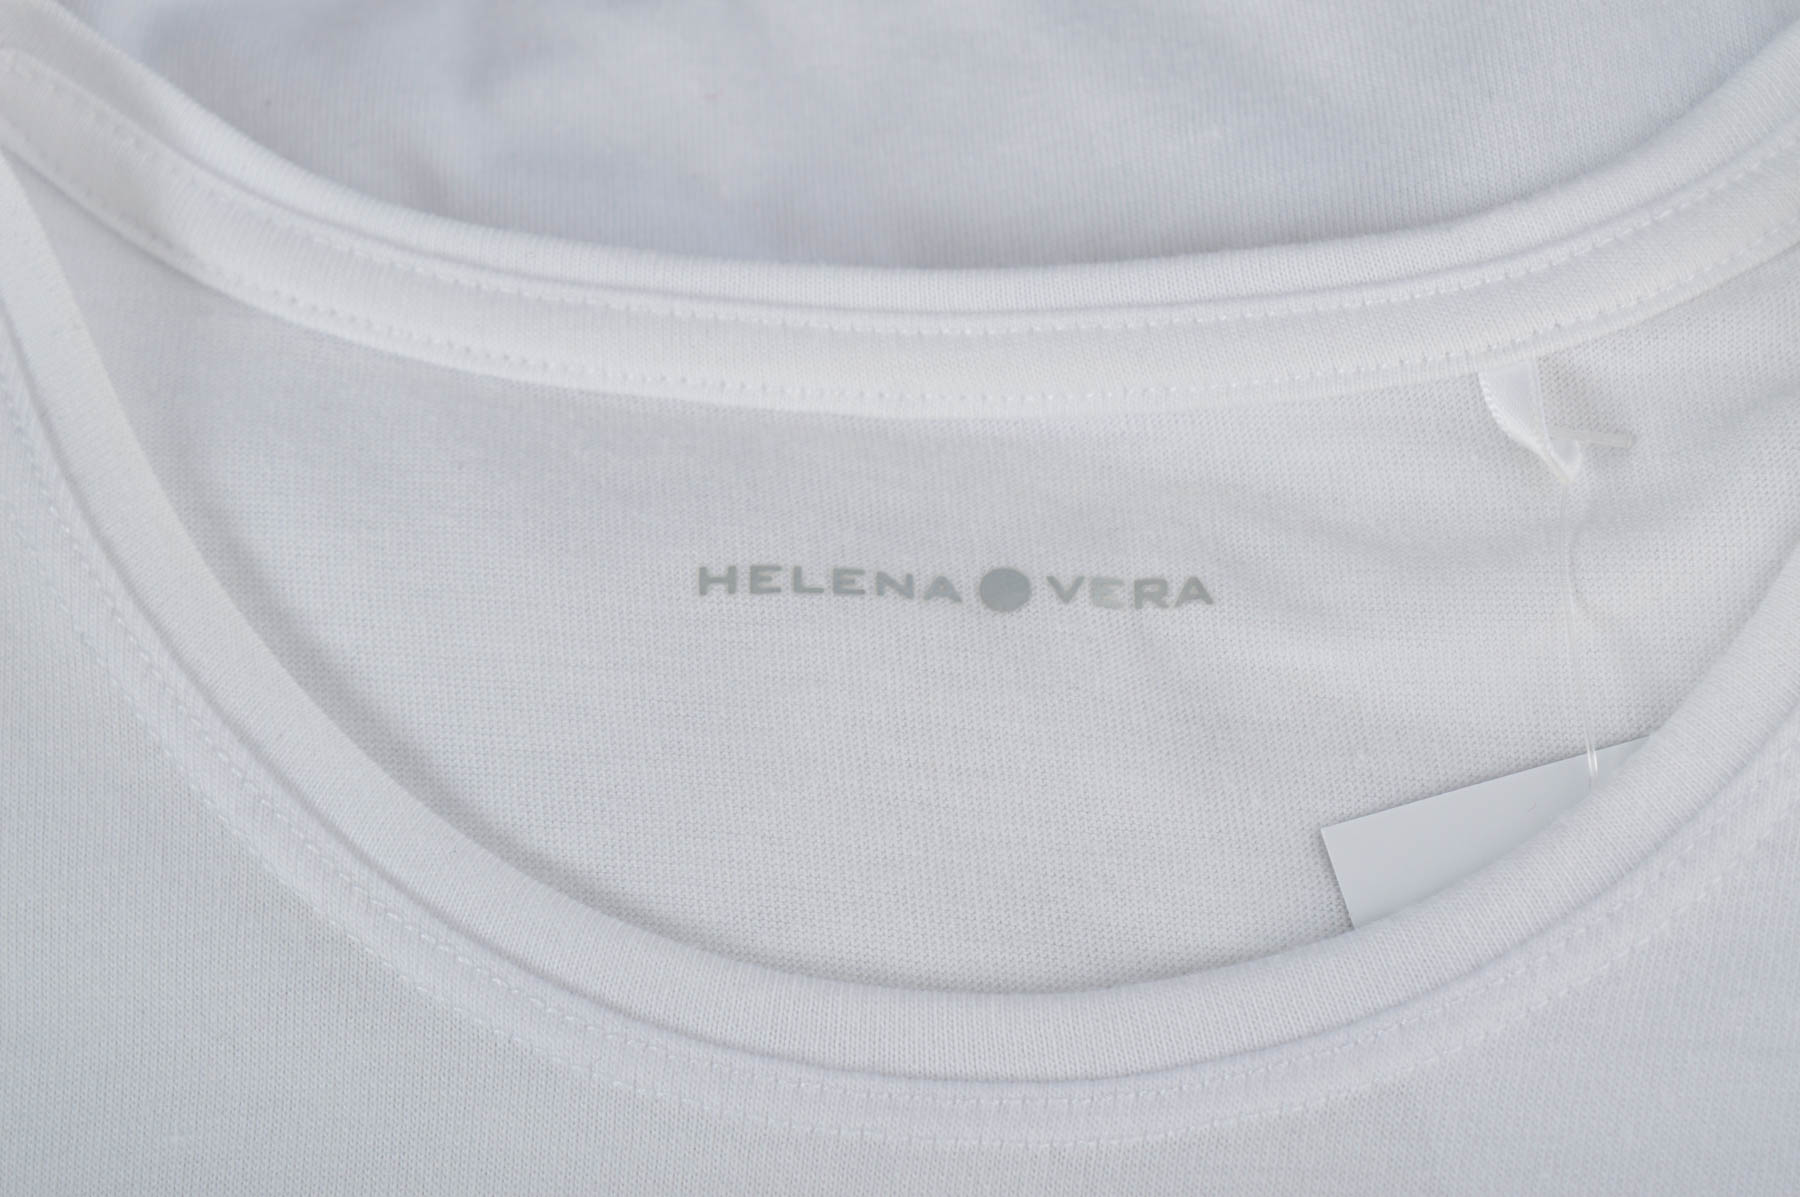 Women's t-shirt - Helena Vera - 2